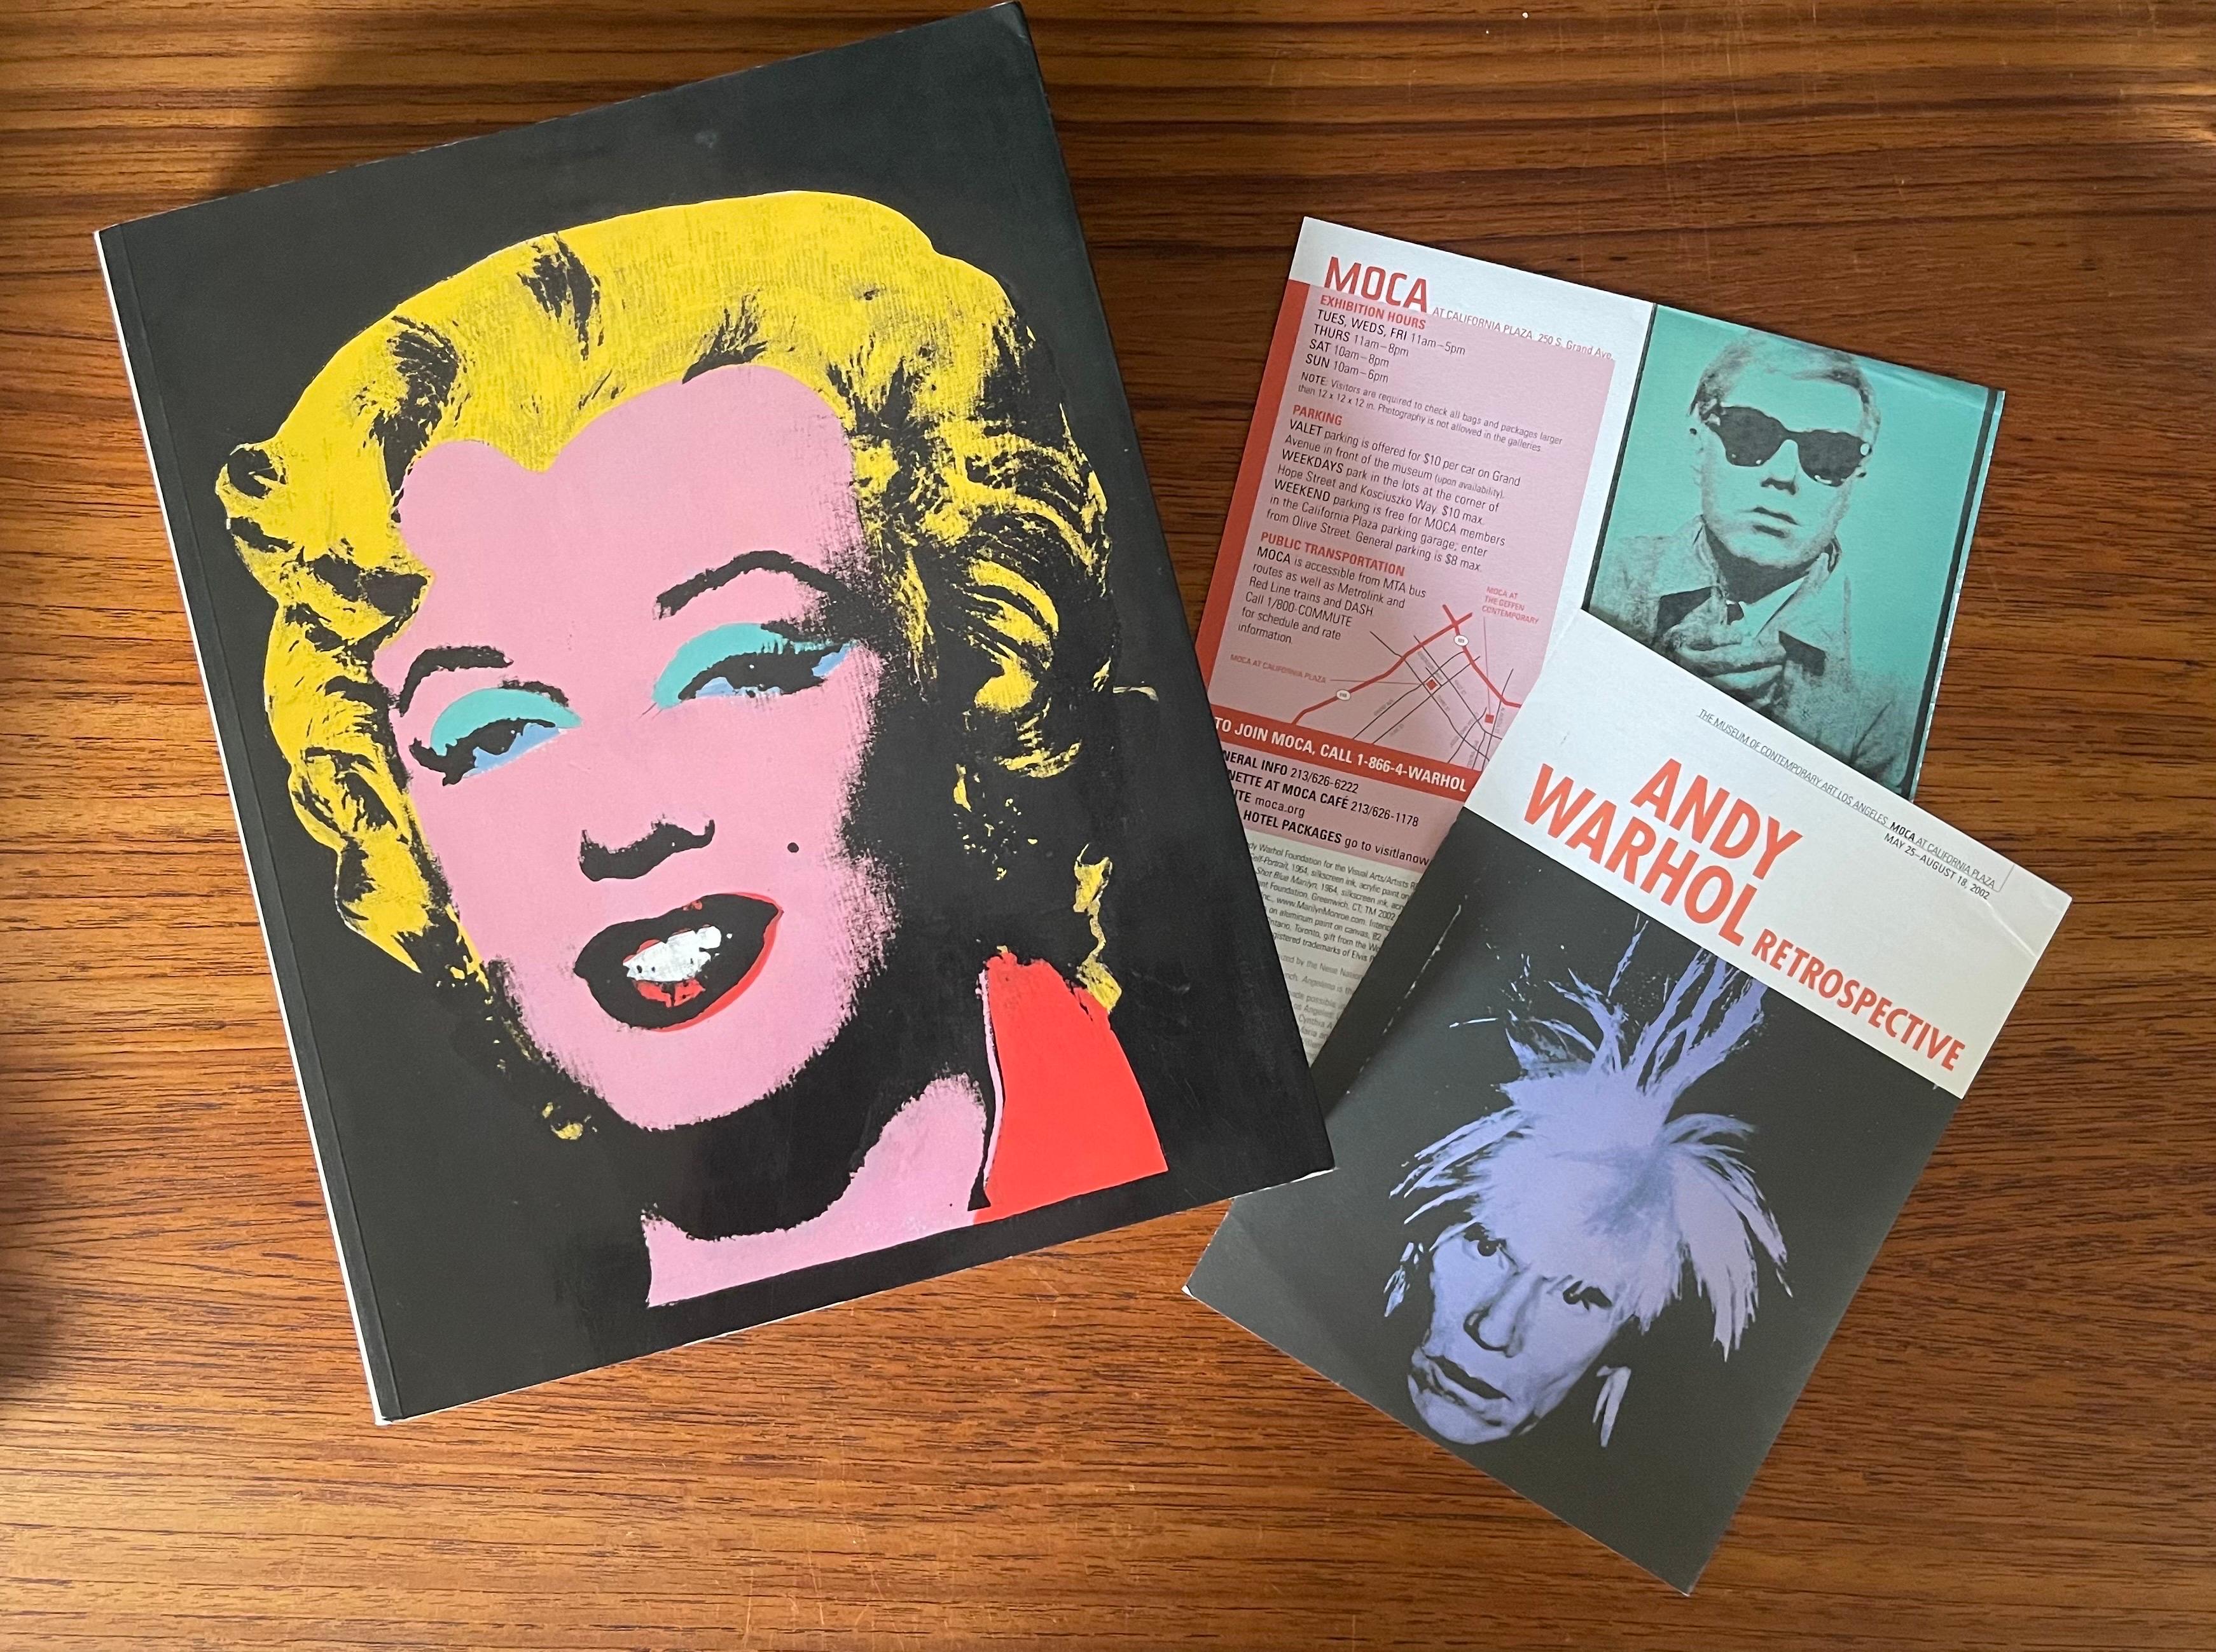 Mid-Century Modern Warhol Retrospective Art Book and Exhibit Programs Moca LA 2002 For Sale